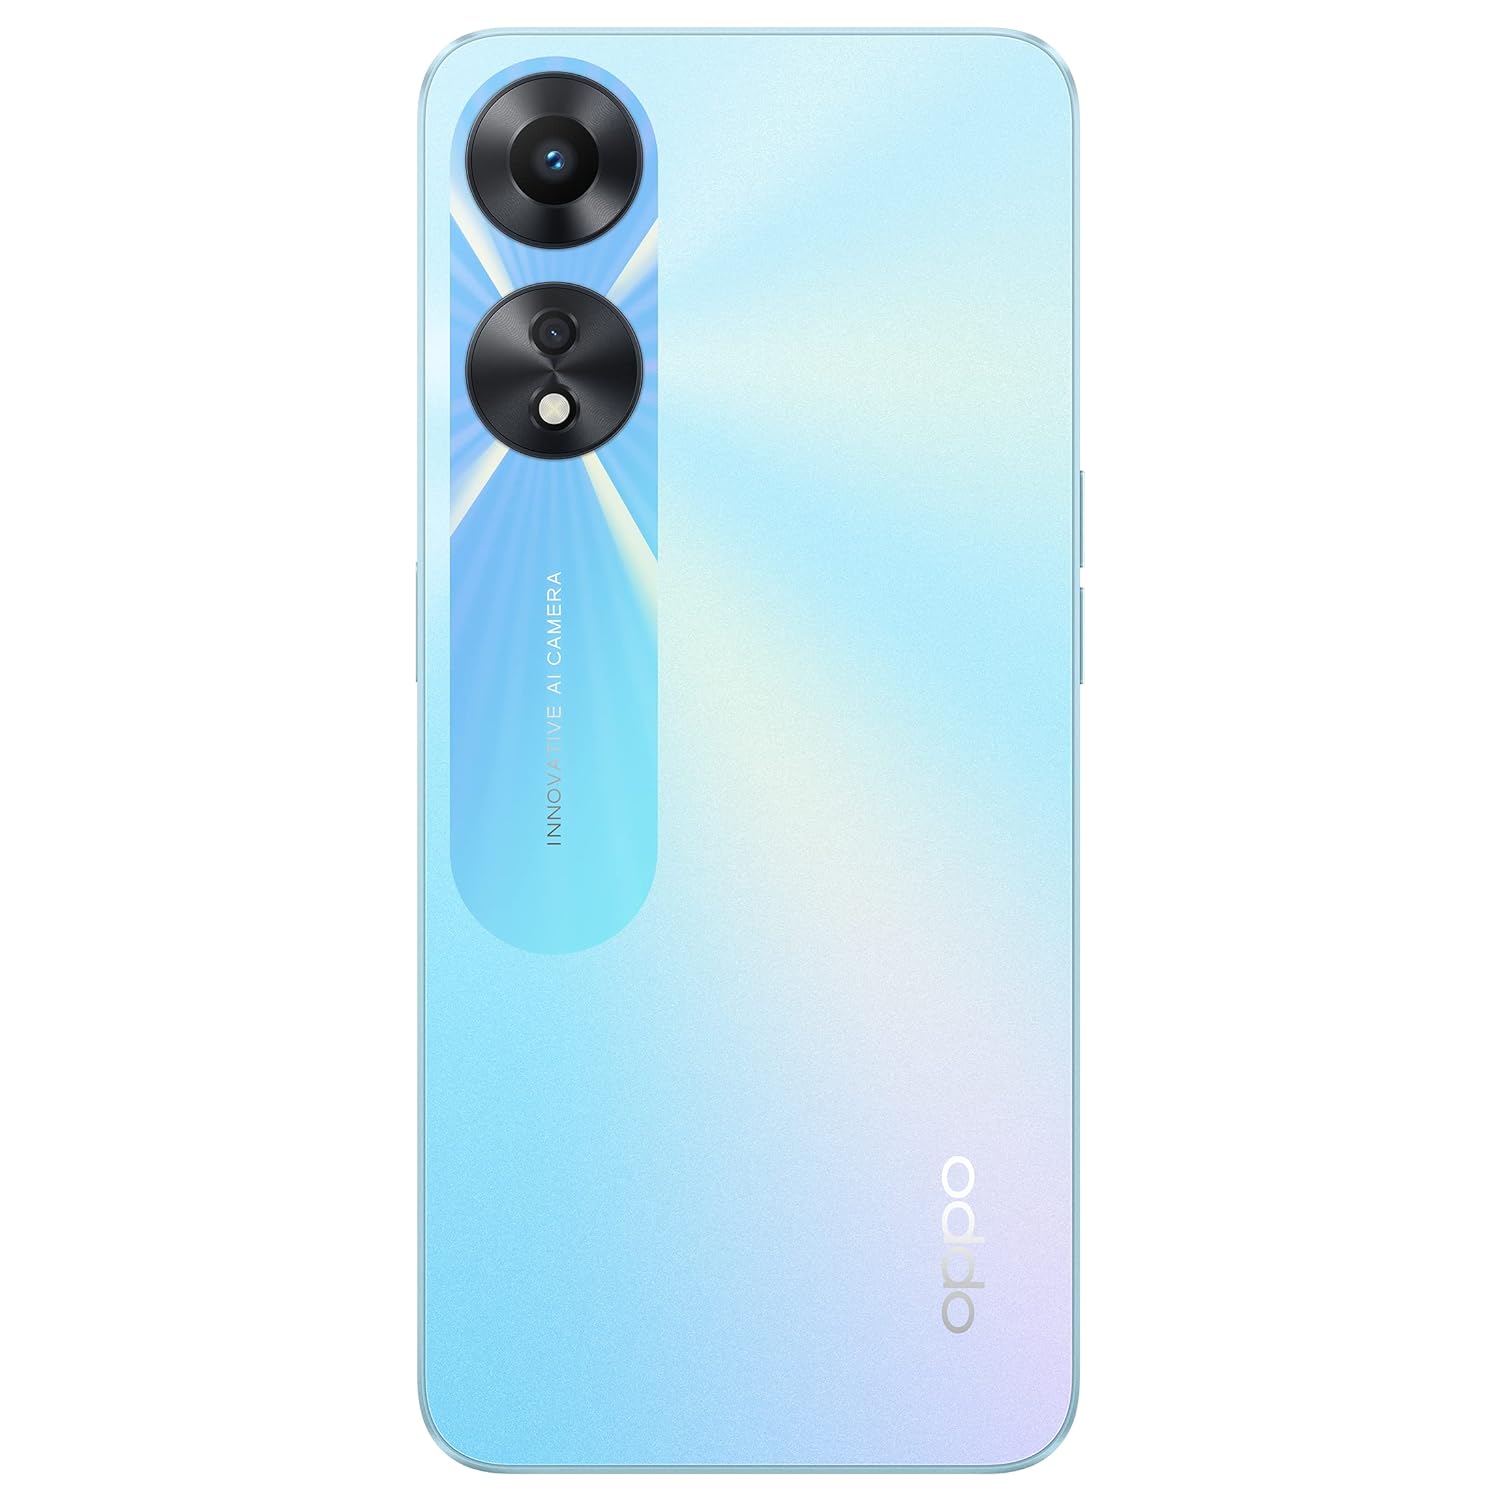 Oppo A78 5G (Glowing Blue, 128GB) (8GB RAM)